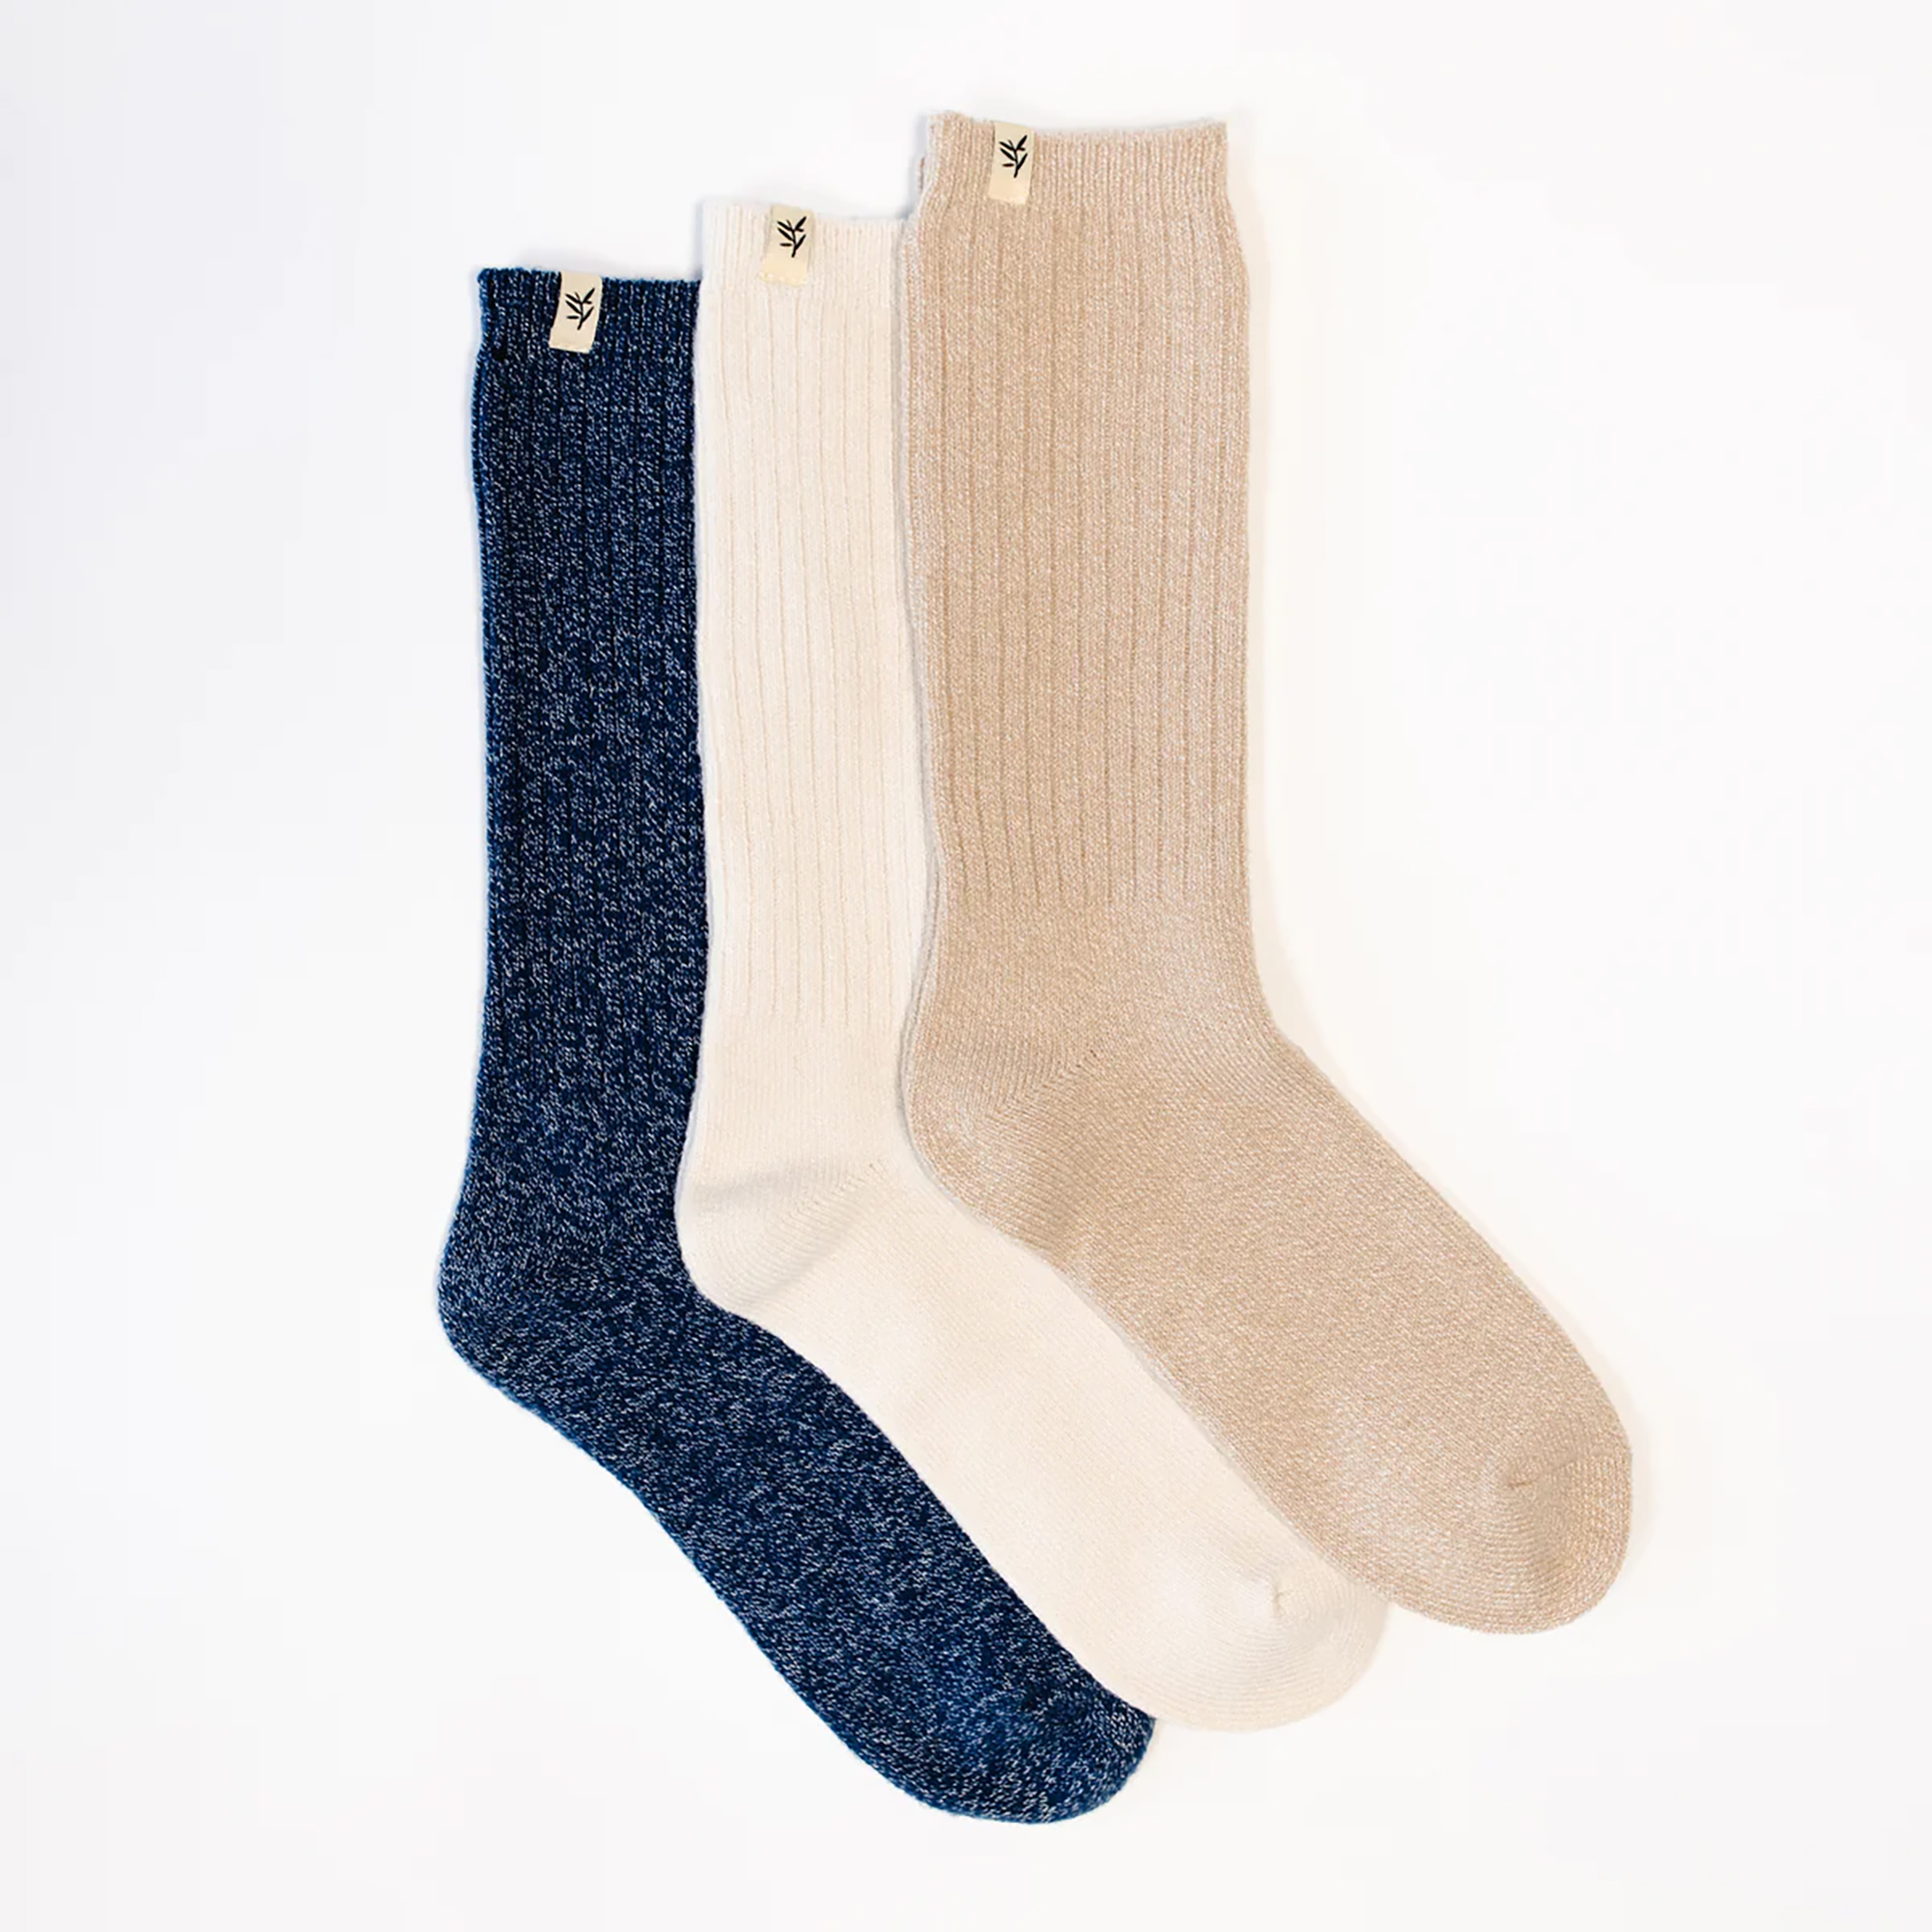 Ein Set mit drei Socken, einmal marineblau, einmal weiß und einmal braun